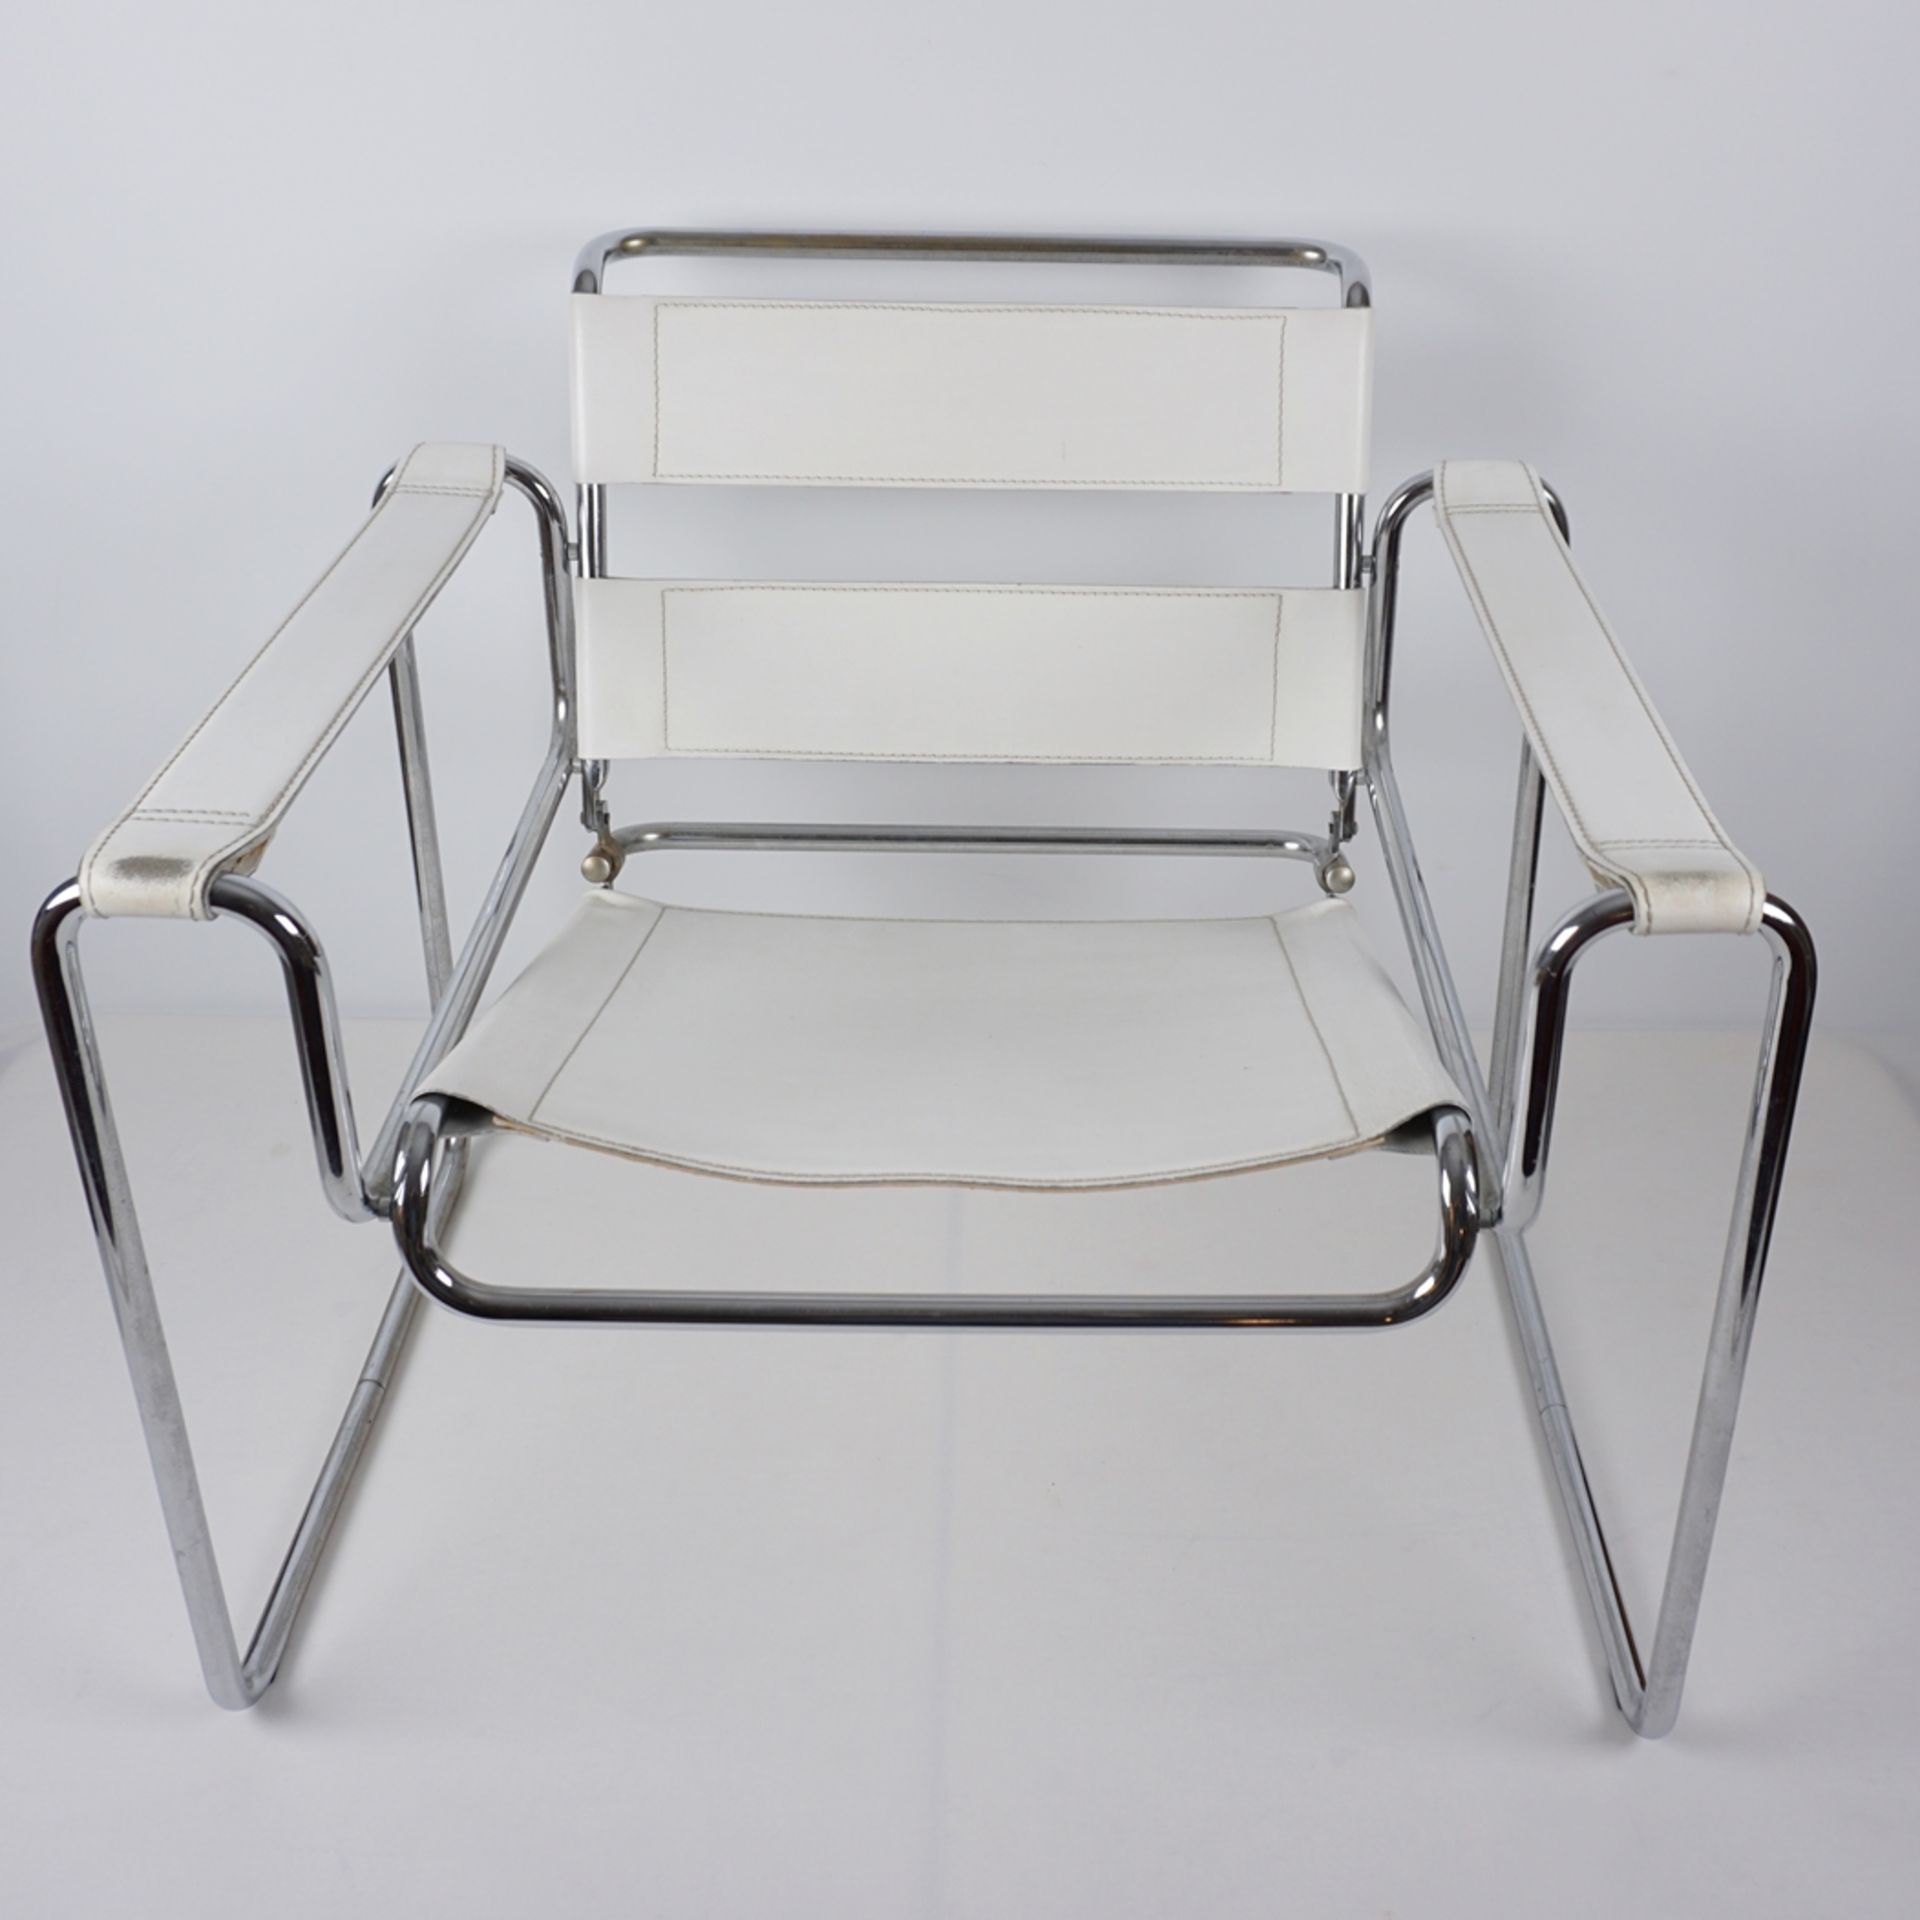 Paar Armlehnstühle im Stil der Wassily chairs von Marcel Breuer, 1960/1970er Jahre - Image 2 of 5